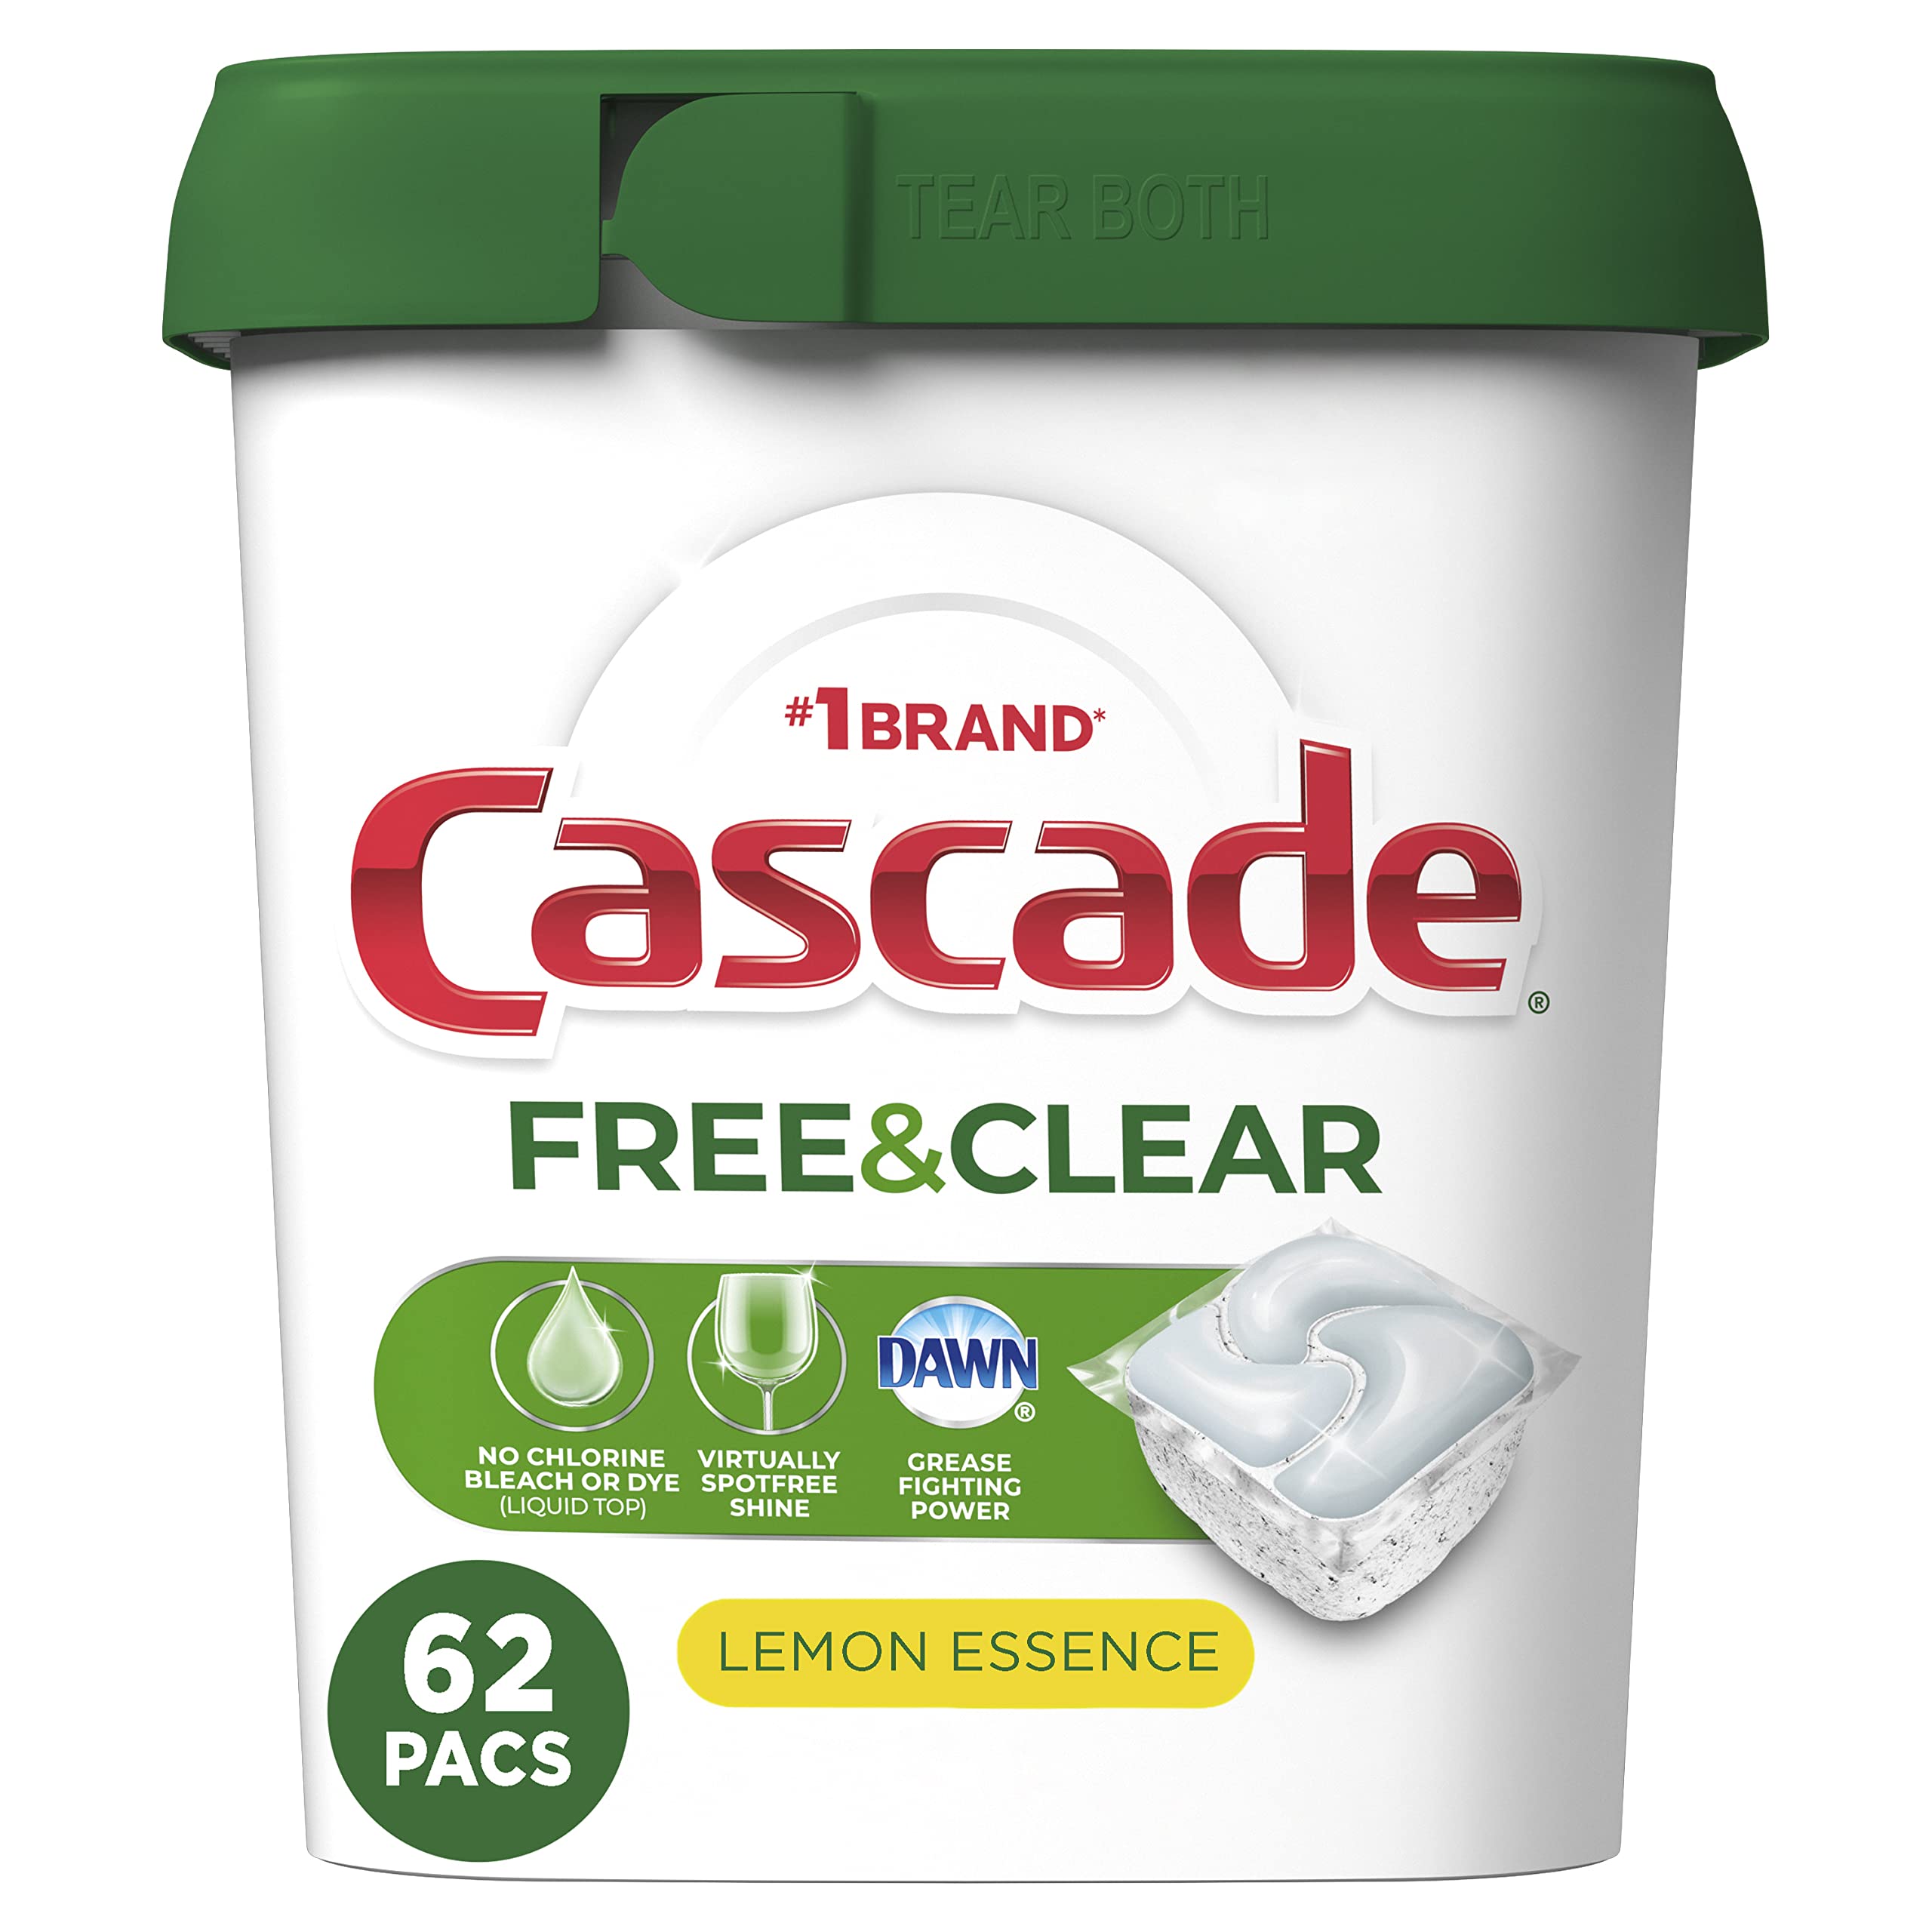 Cascade Free & Clear ActionPacs, Dishwasher Detergent, Lemon Essence, 62 Count